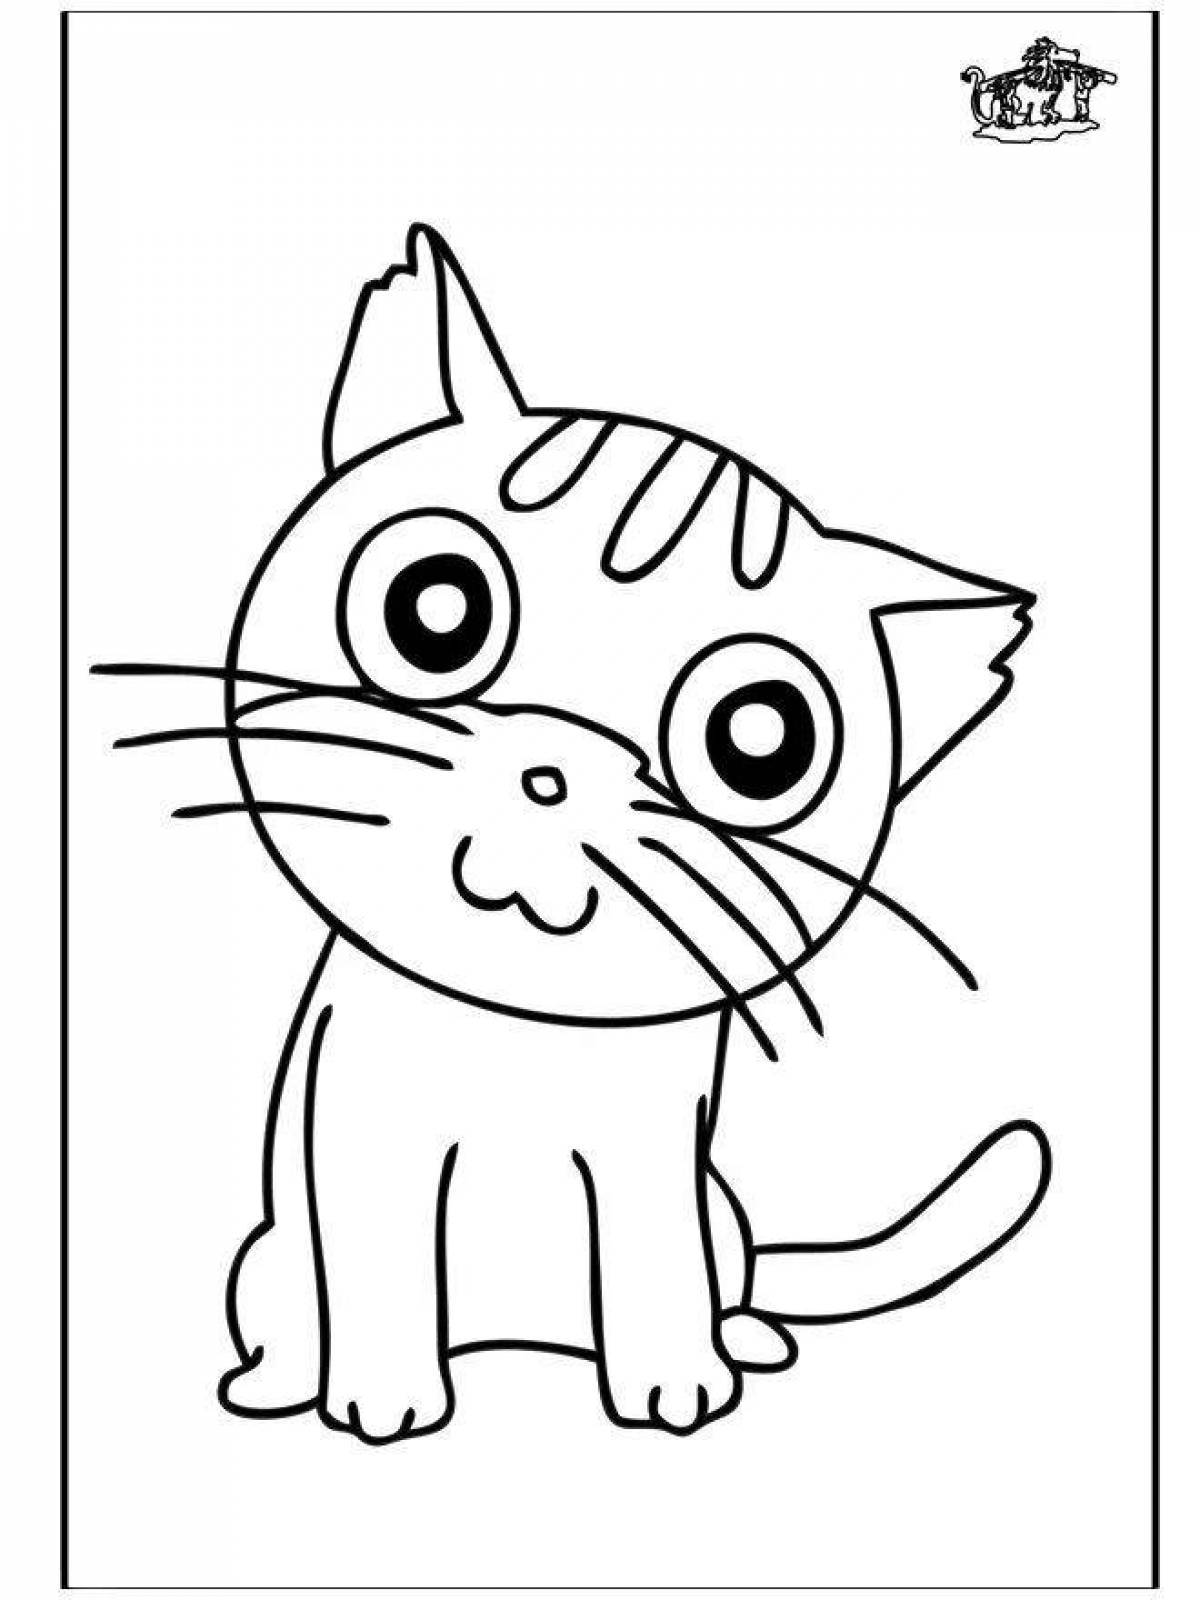 Живая страница раскраски котенка бубу